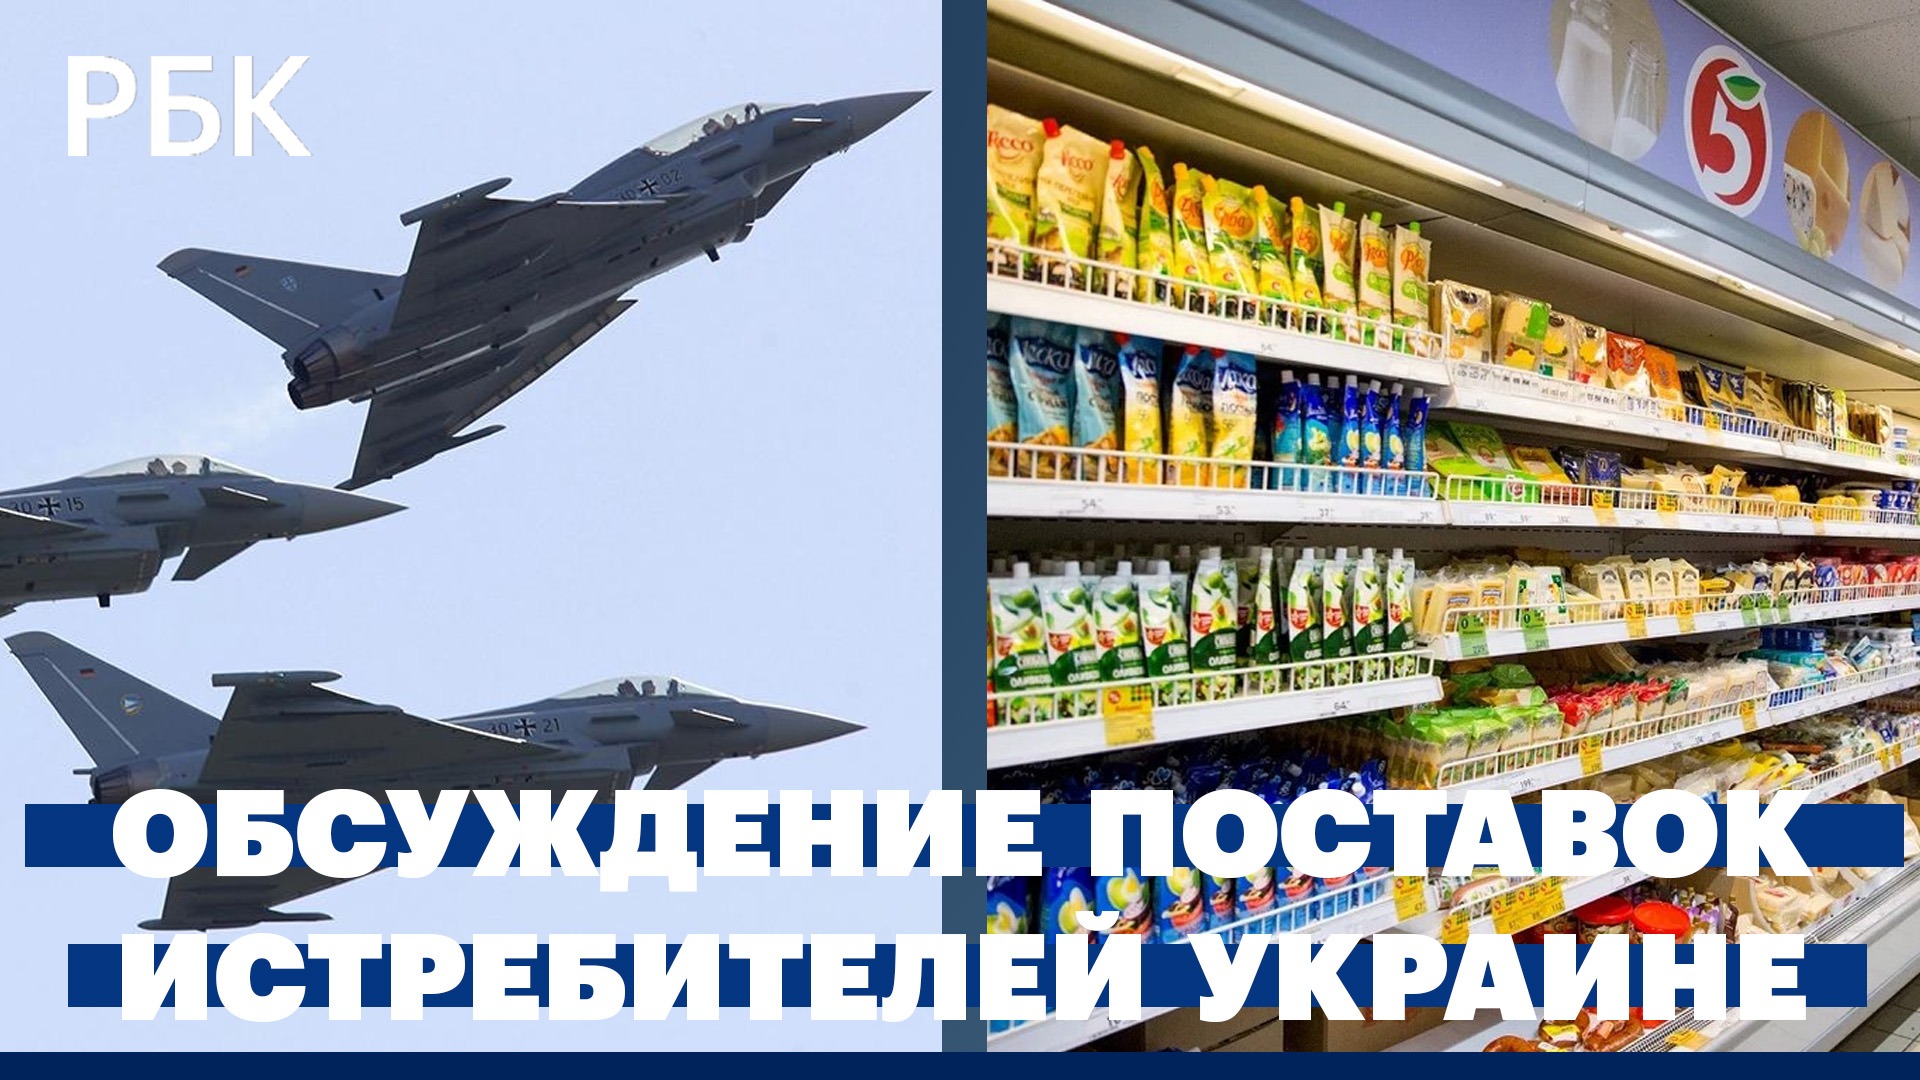 Обсуждение поставок Украине истребителей. В России упал спрос на товары повседневного потребления